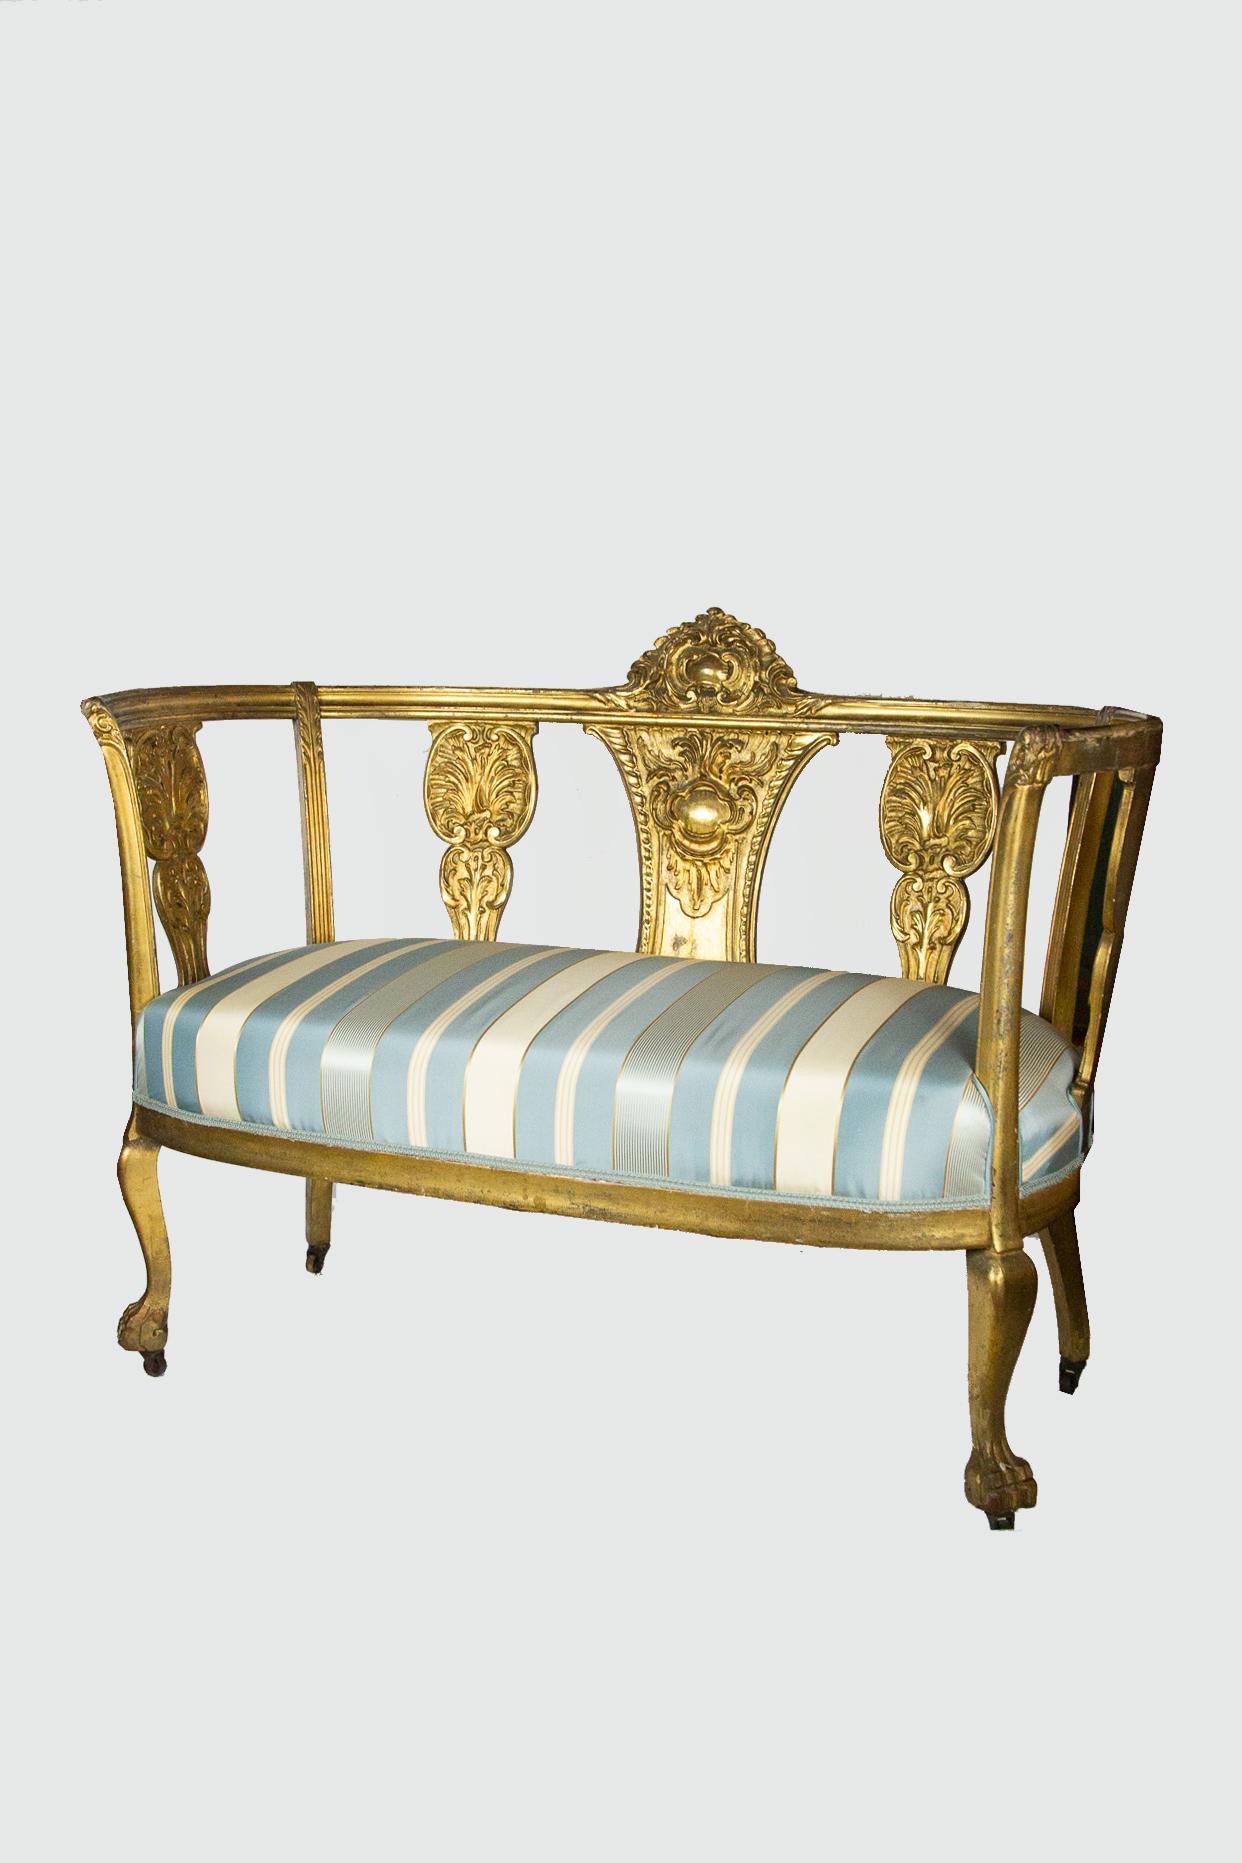 Vergoldetes Sofa und passender Stuhl im gustavianischen Stil des späten 19. Jahrhunderts, neu gepolstert. Frühere Restaurierungen und Reparatur am linken hinteren Bein des Sofas. Auf Rollen.